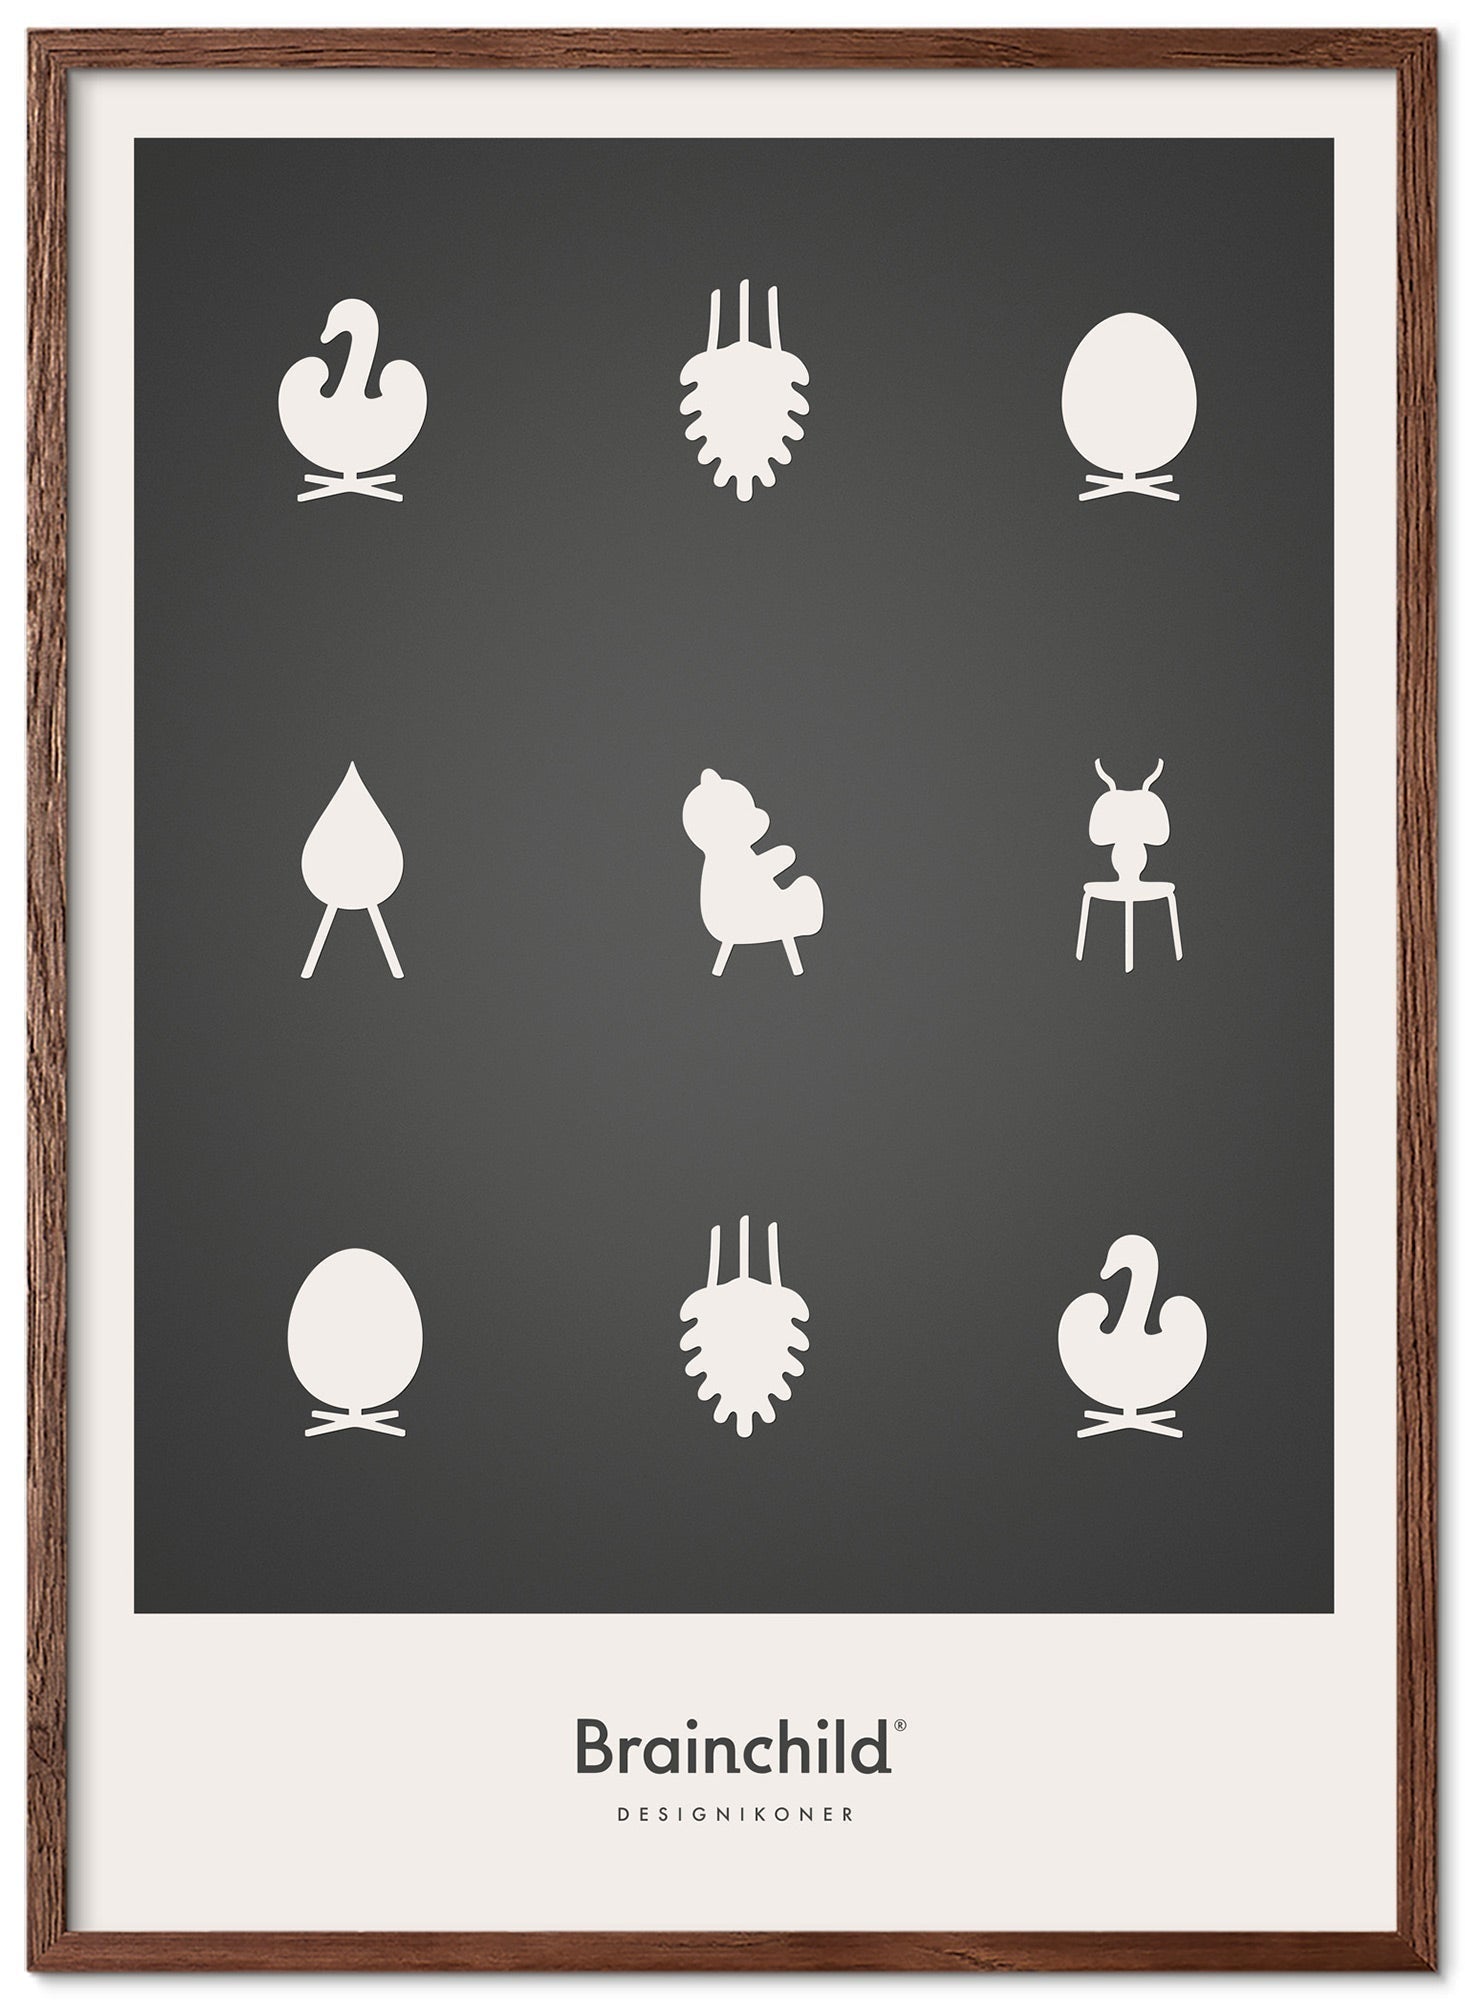 Brainchild Design iconen poster frame gemaakt van donker hout 50x70 cm, donkergrijs